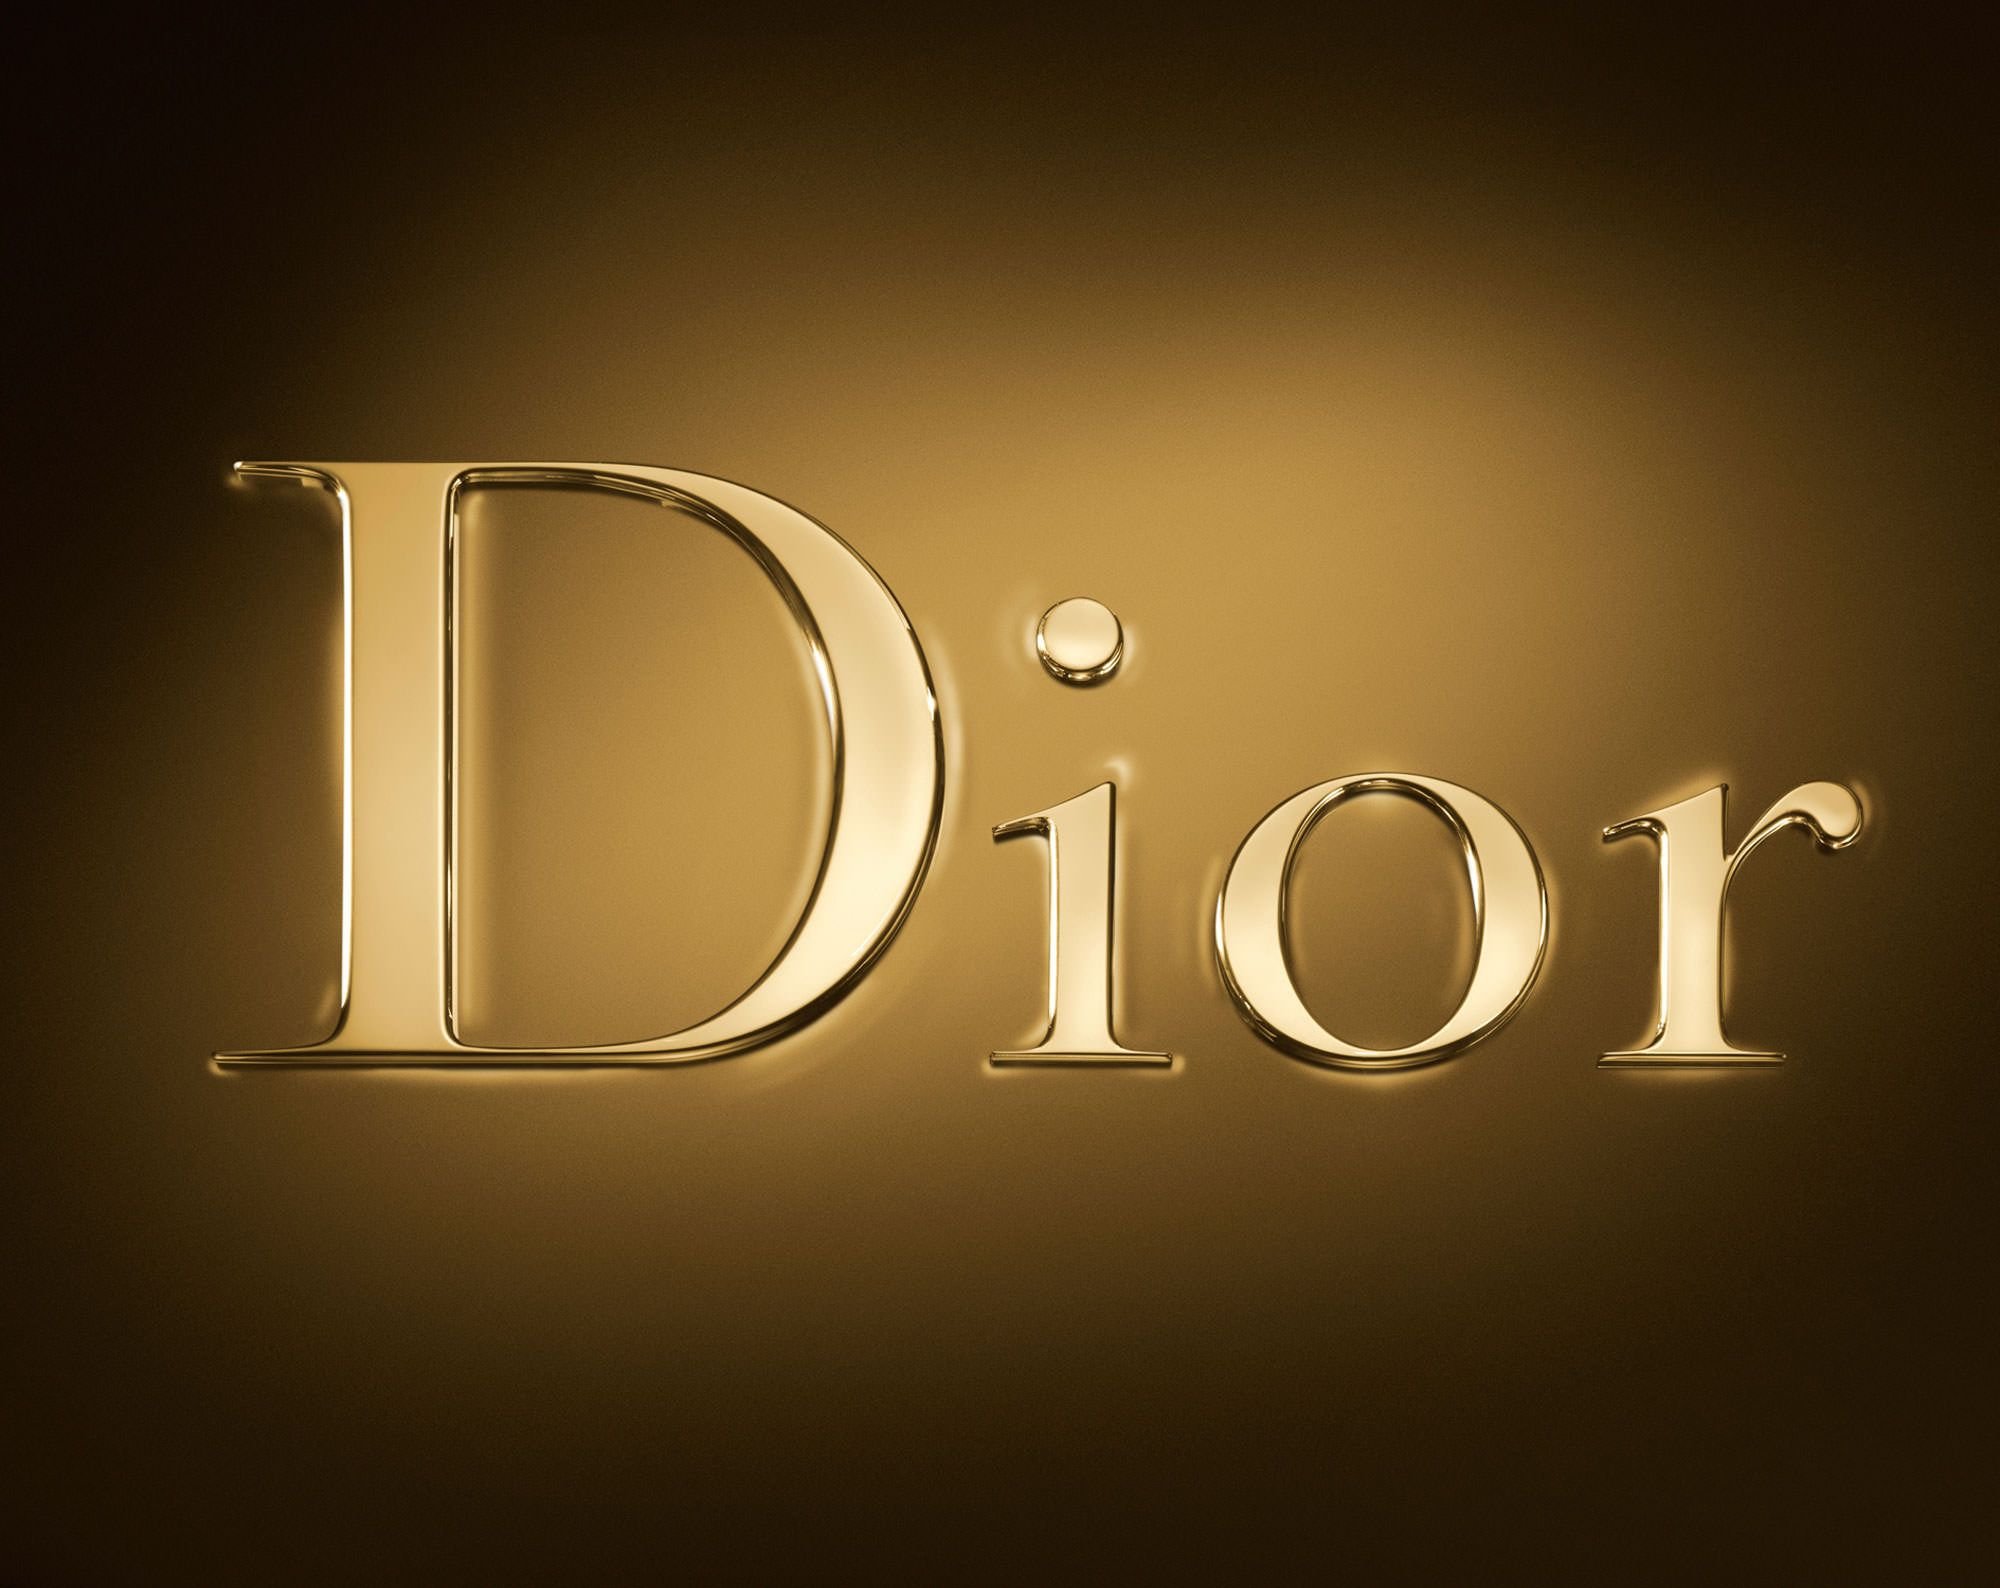 Christian Dior Parfums logo.